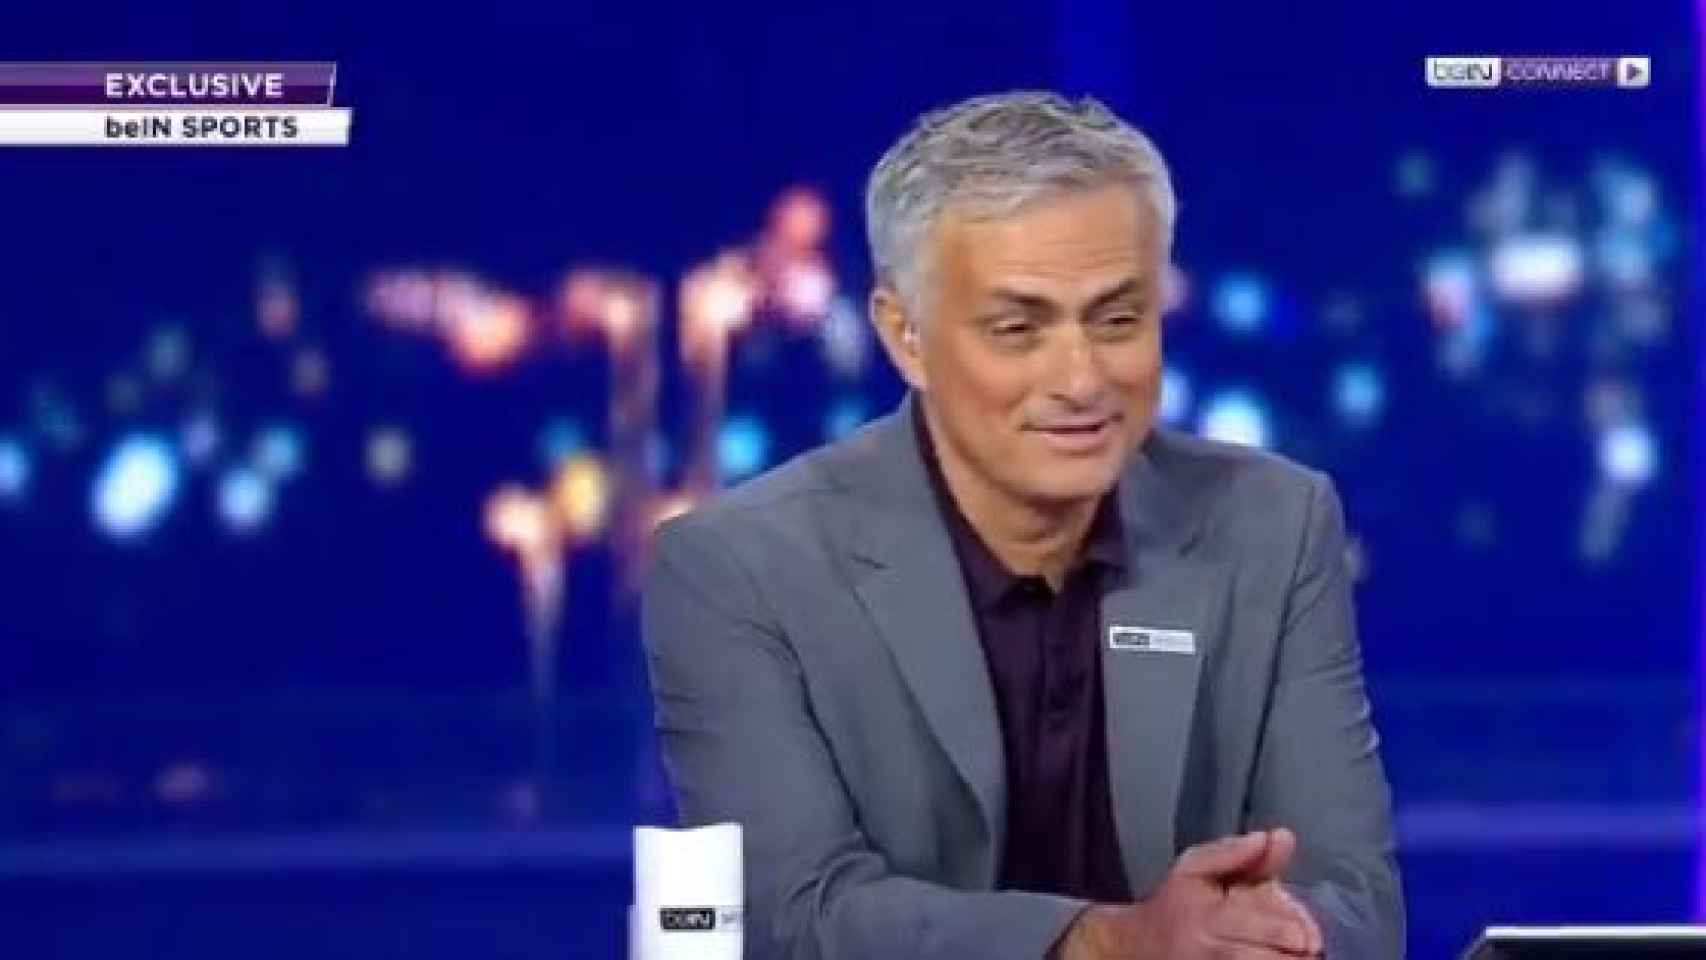 José Mourinho habla de la eliminación del Barcelona en Bein Sports